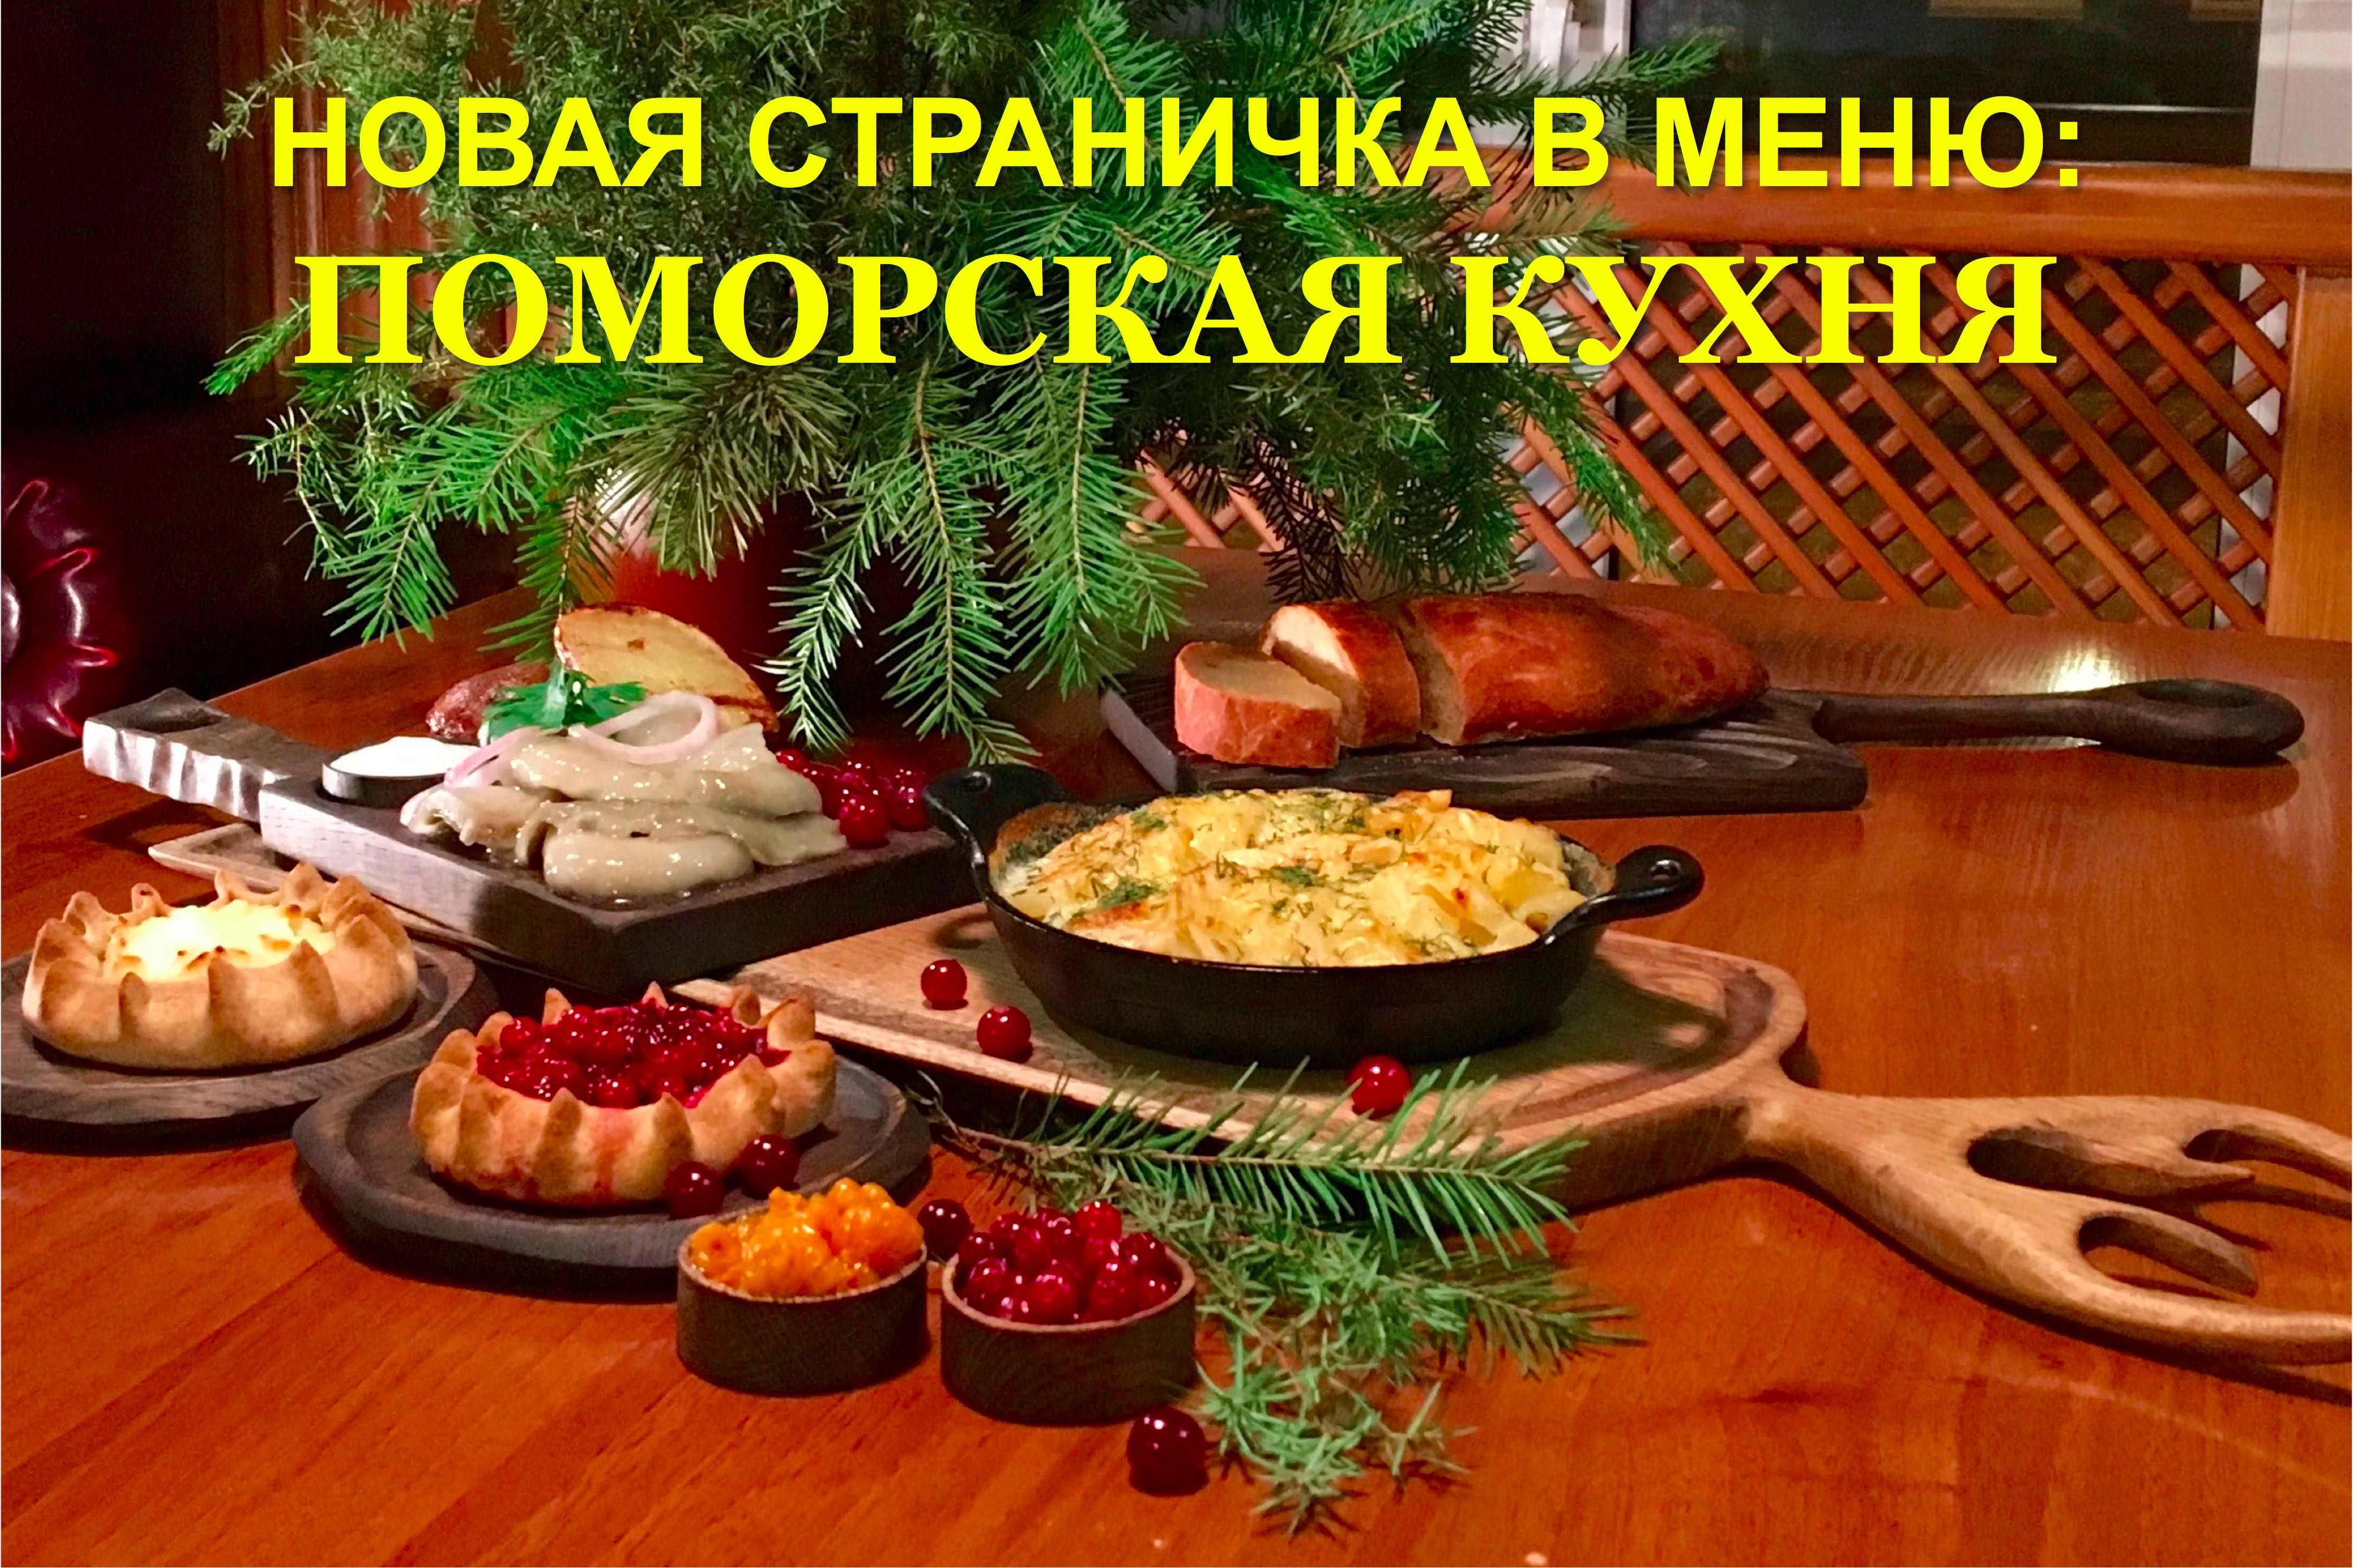 Трагедия старорусской кухни: почему мы мало знаем о традиционных славянских рецептах